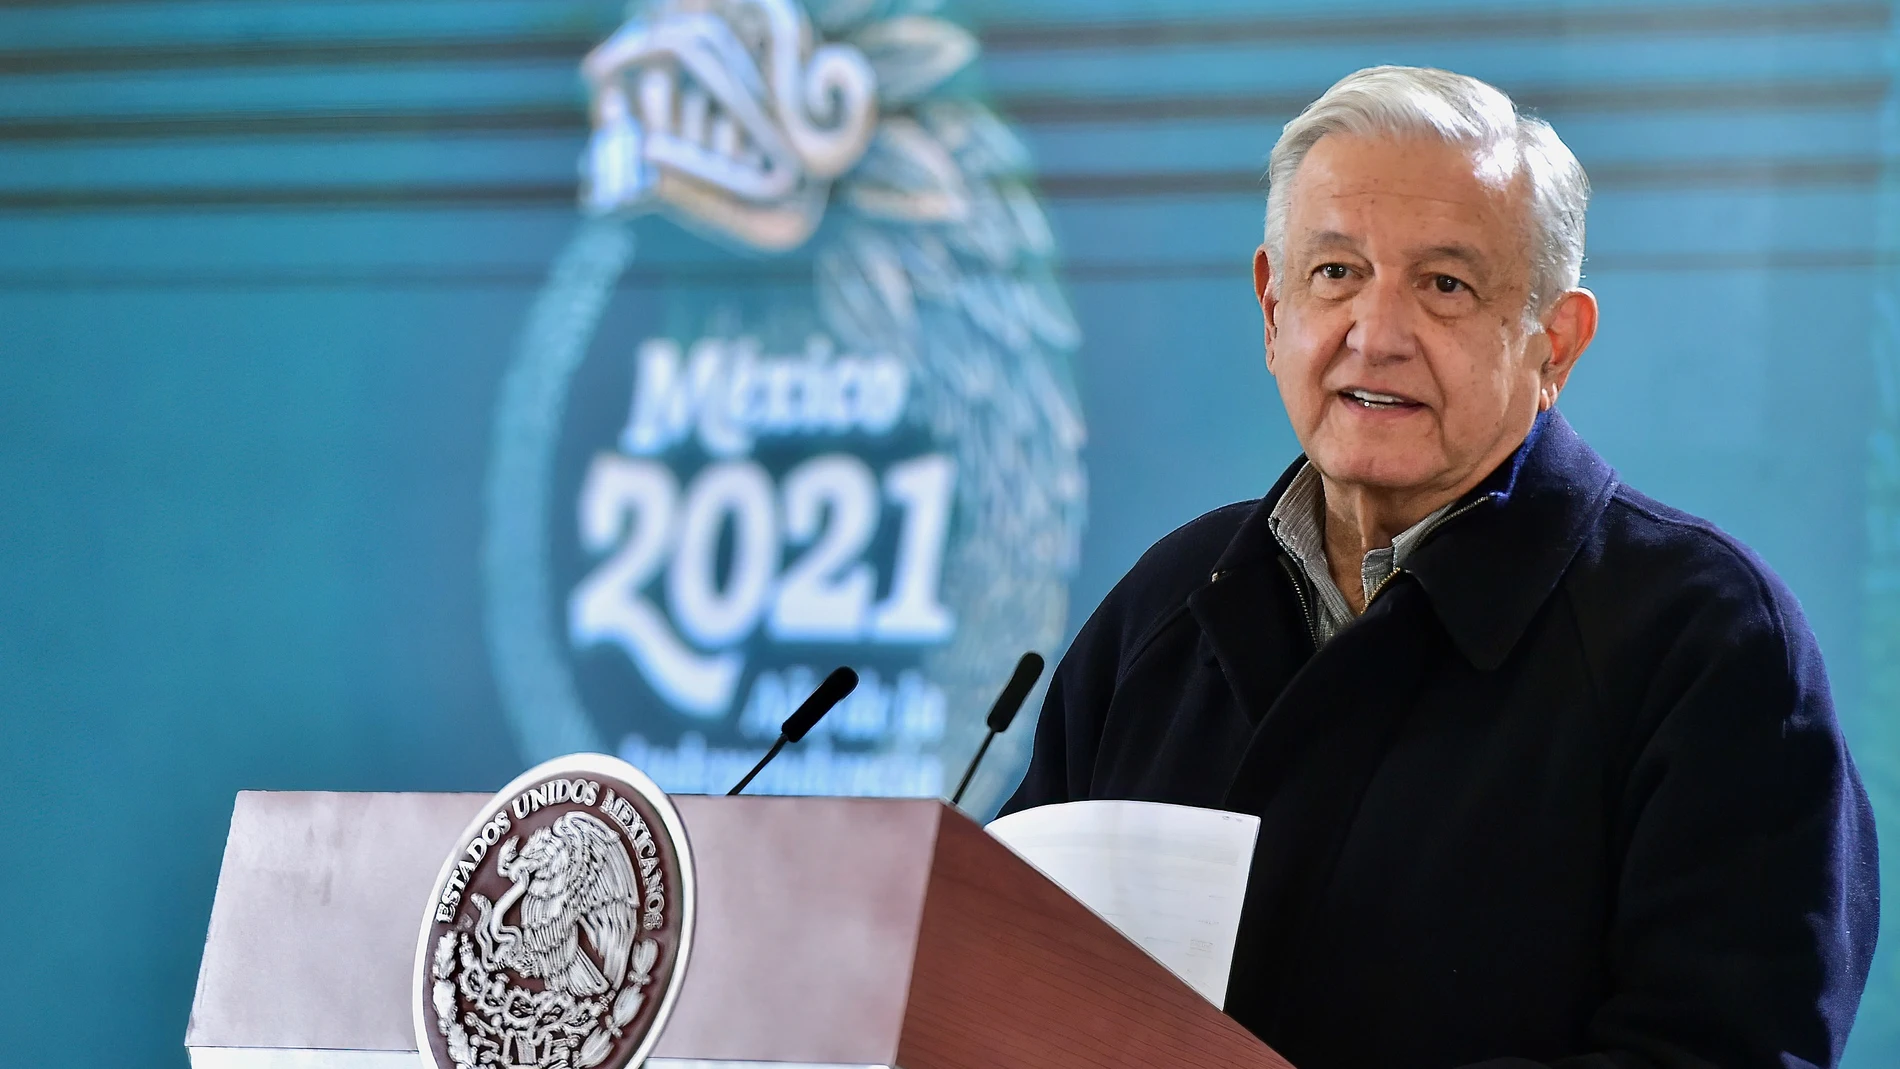 El mandatario mexicano Andrés Manuel López Obrador durante una rueda de prensa en el municipio de Irapuato, estado de Guanajuato